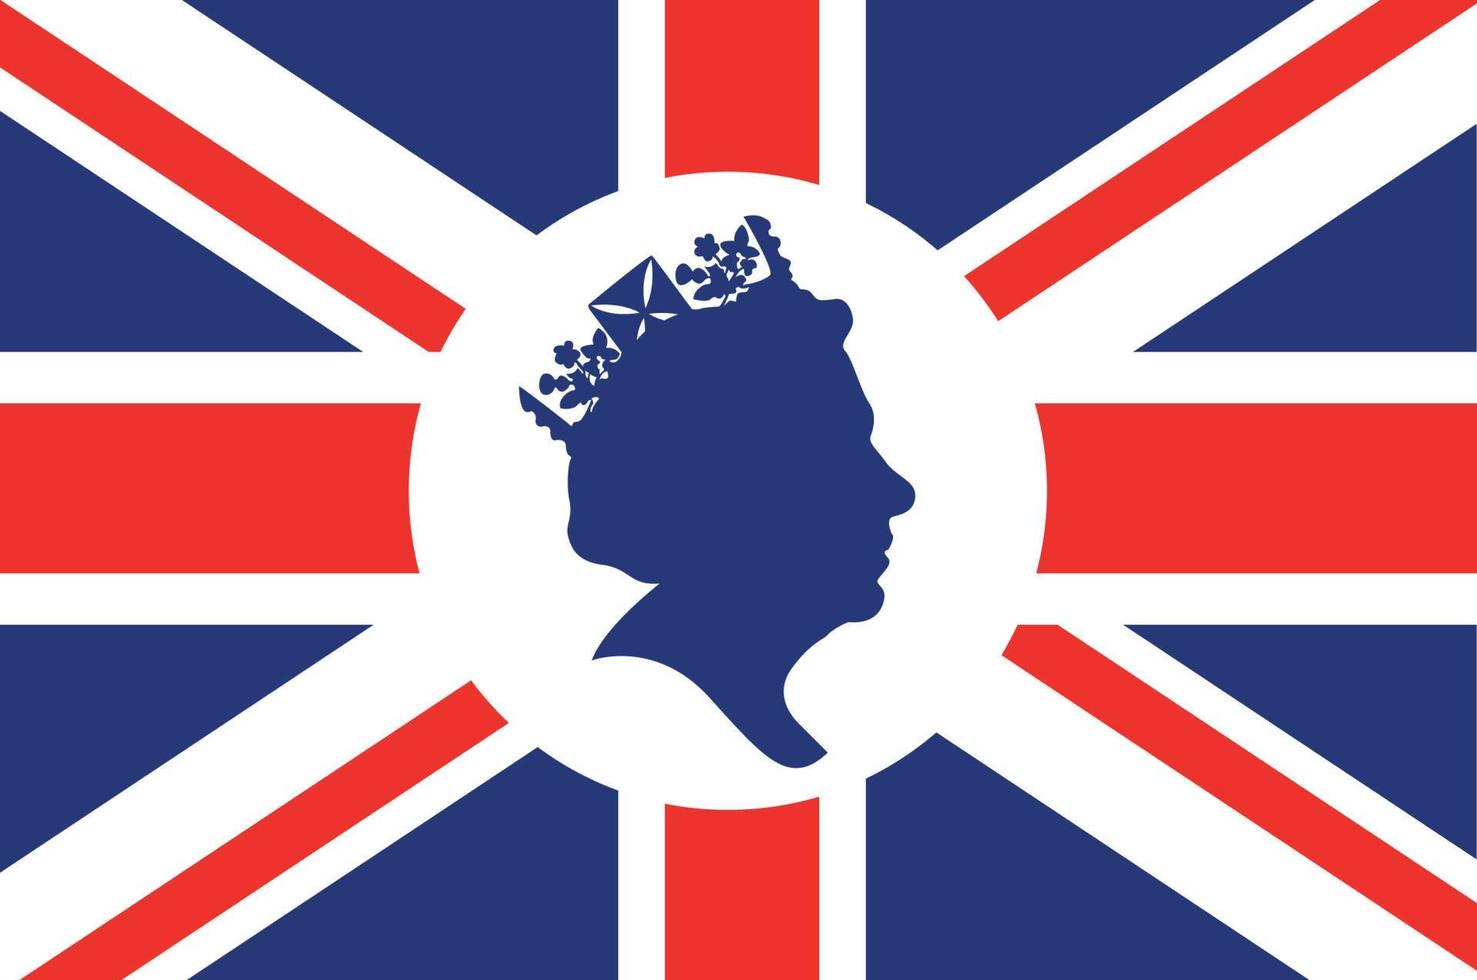 reina elizabeth cara blanca y azul con bandera británica del reino unido emblema nacional de europa icono ilustración vectorial elemento de diseño abstracto vector